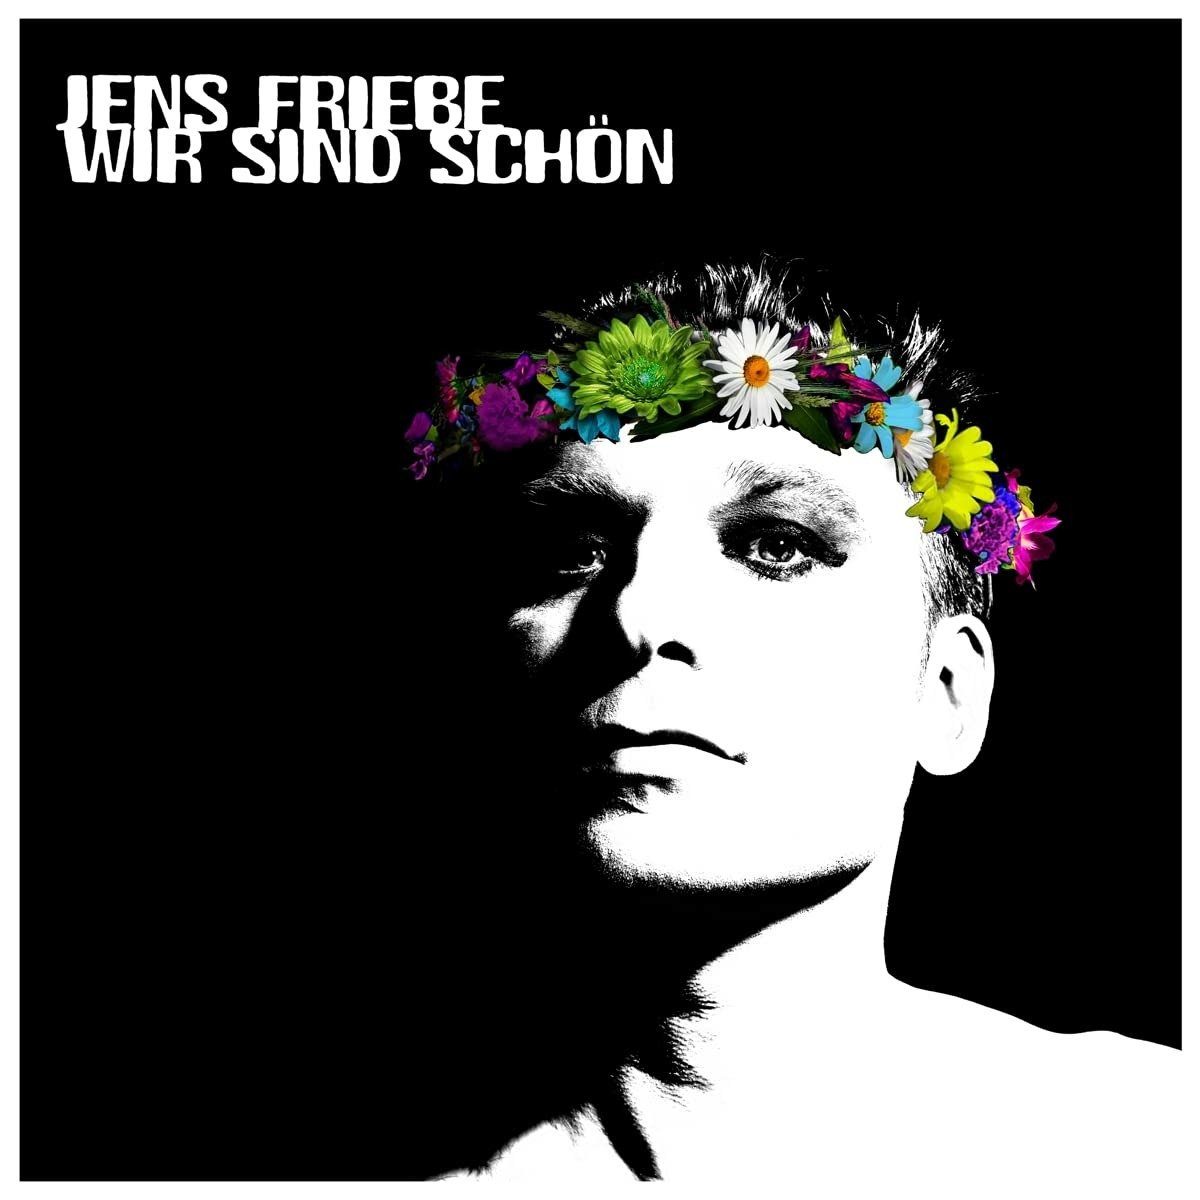 FRIEBE, JENS - WIR SIND SCHON, Vinyl